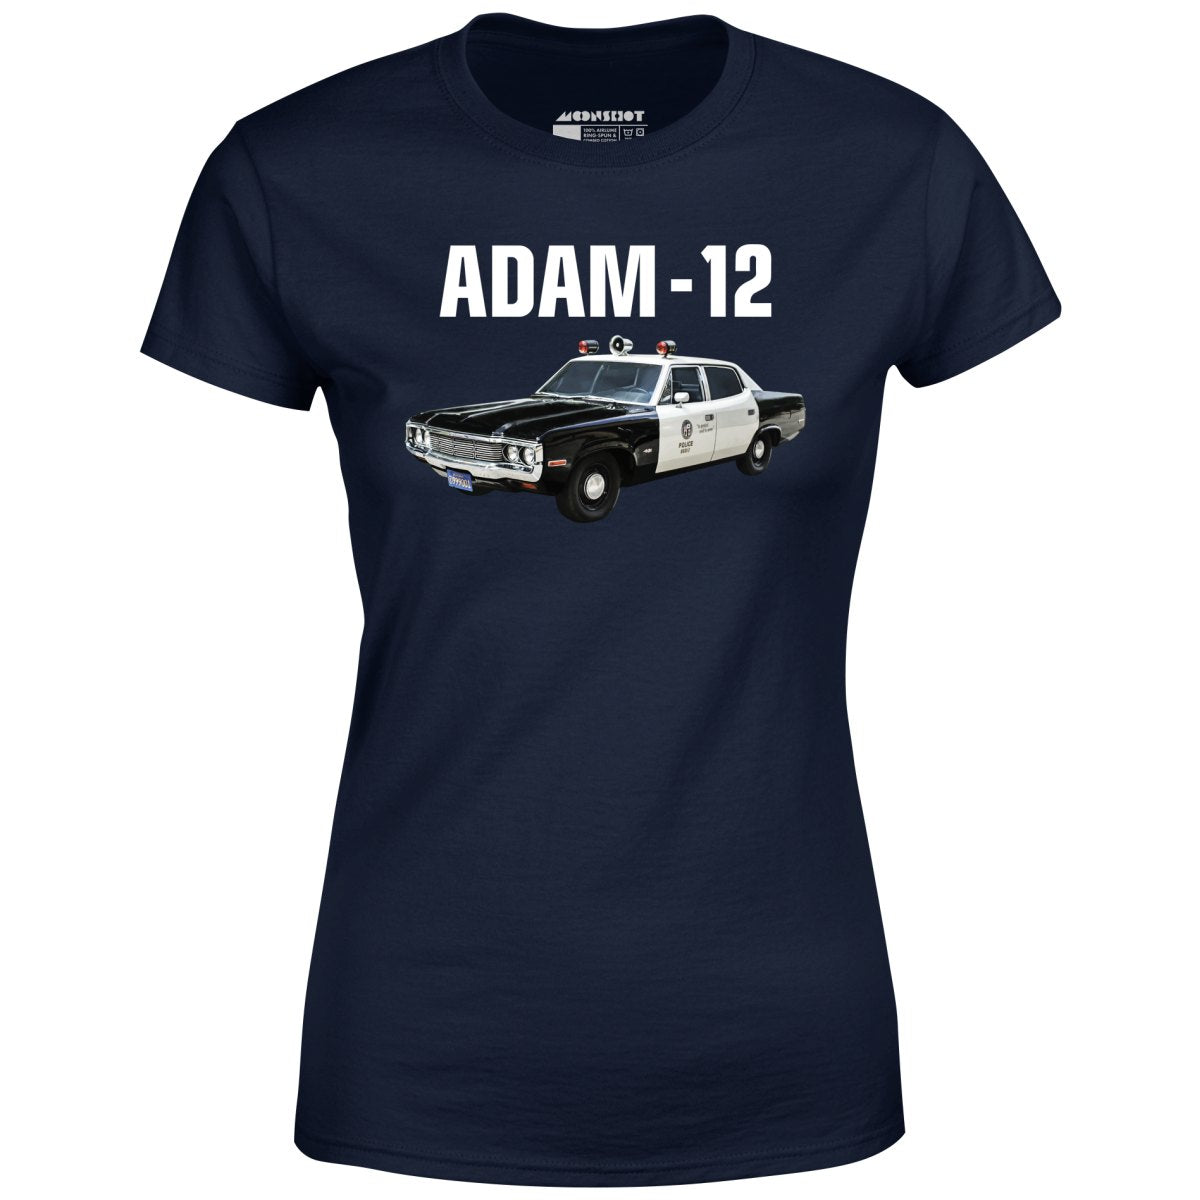 Adam-12 - Women's T-Shirt